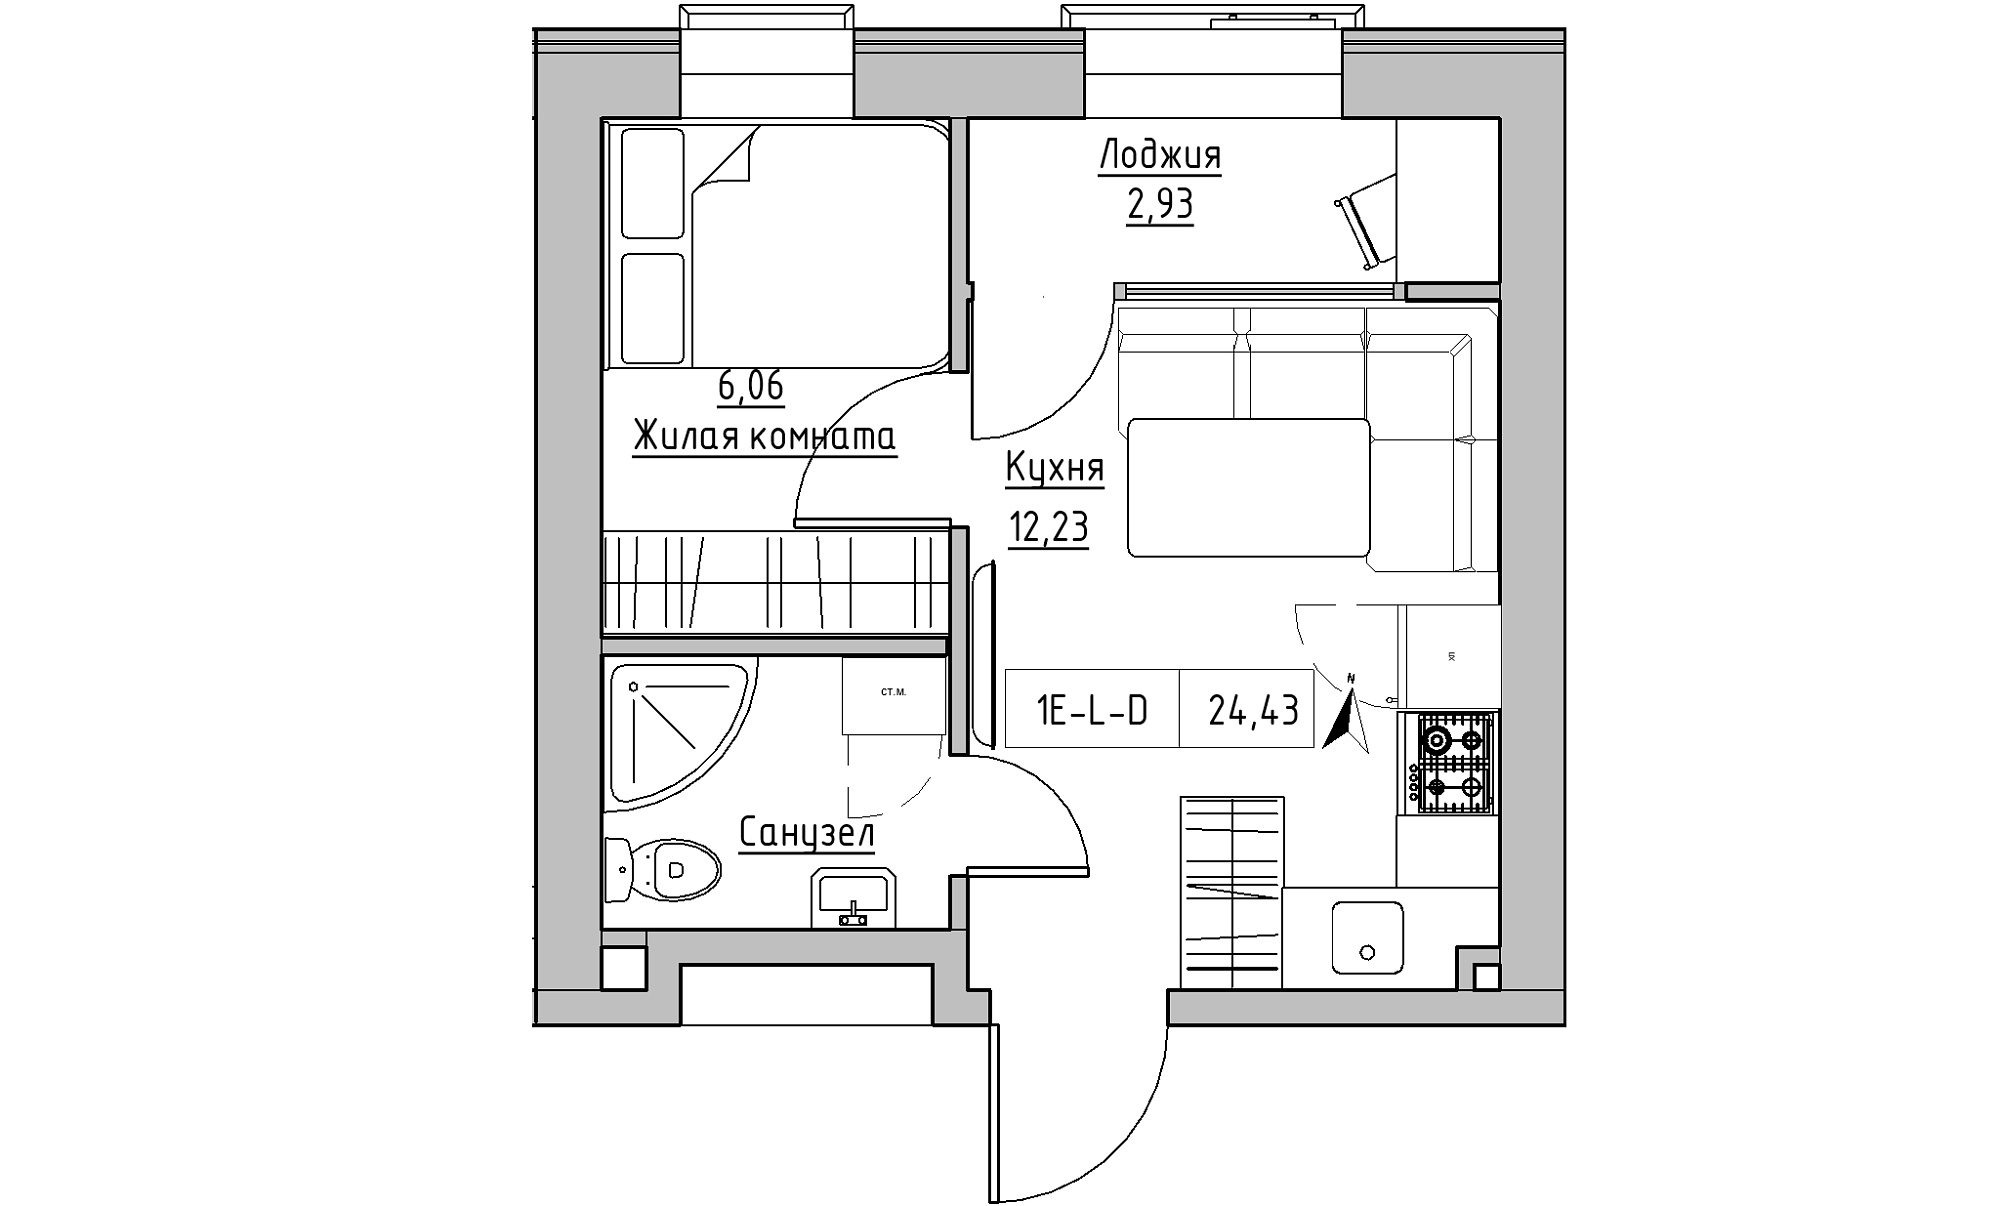 Планировка 1-к квартира площей 24.43м2, KS-023-04/0016.